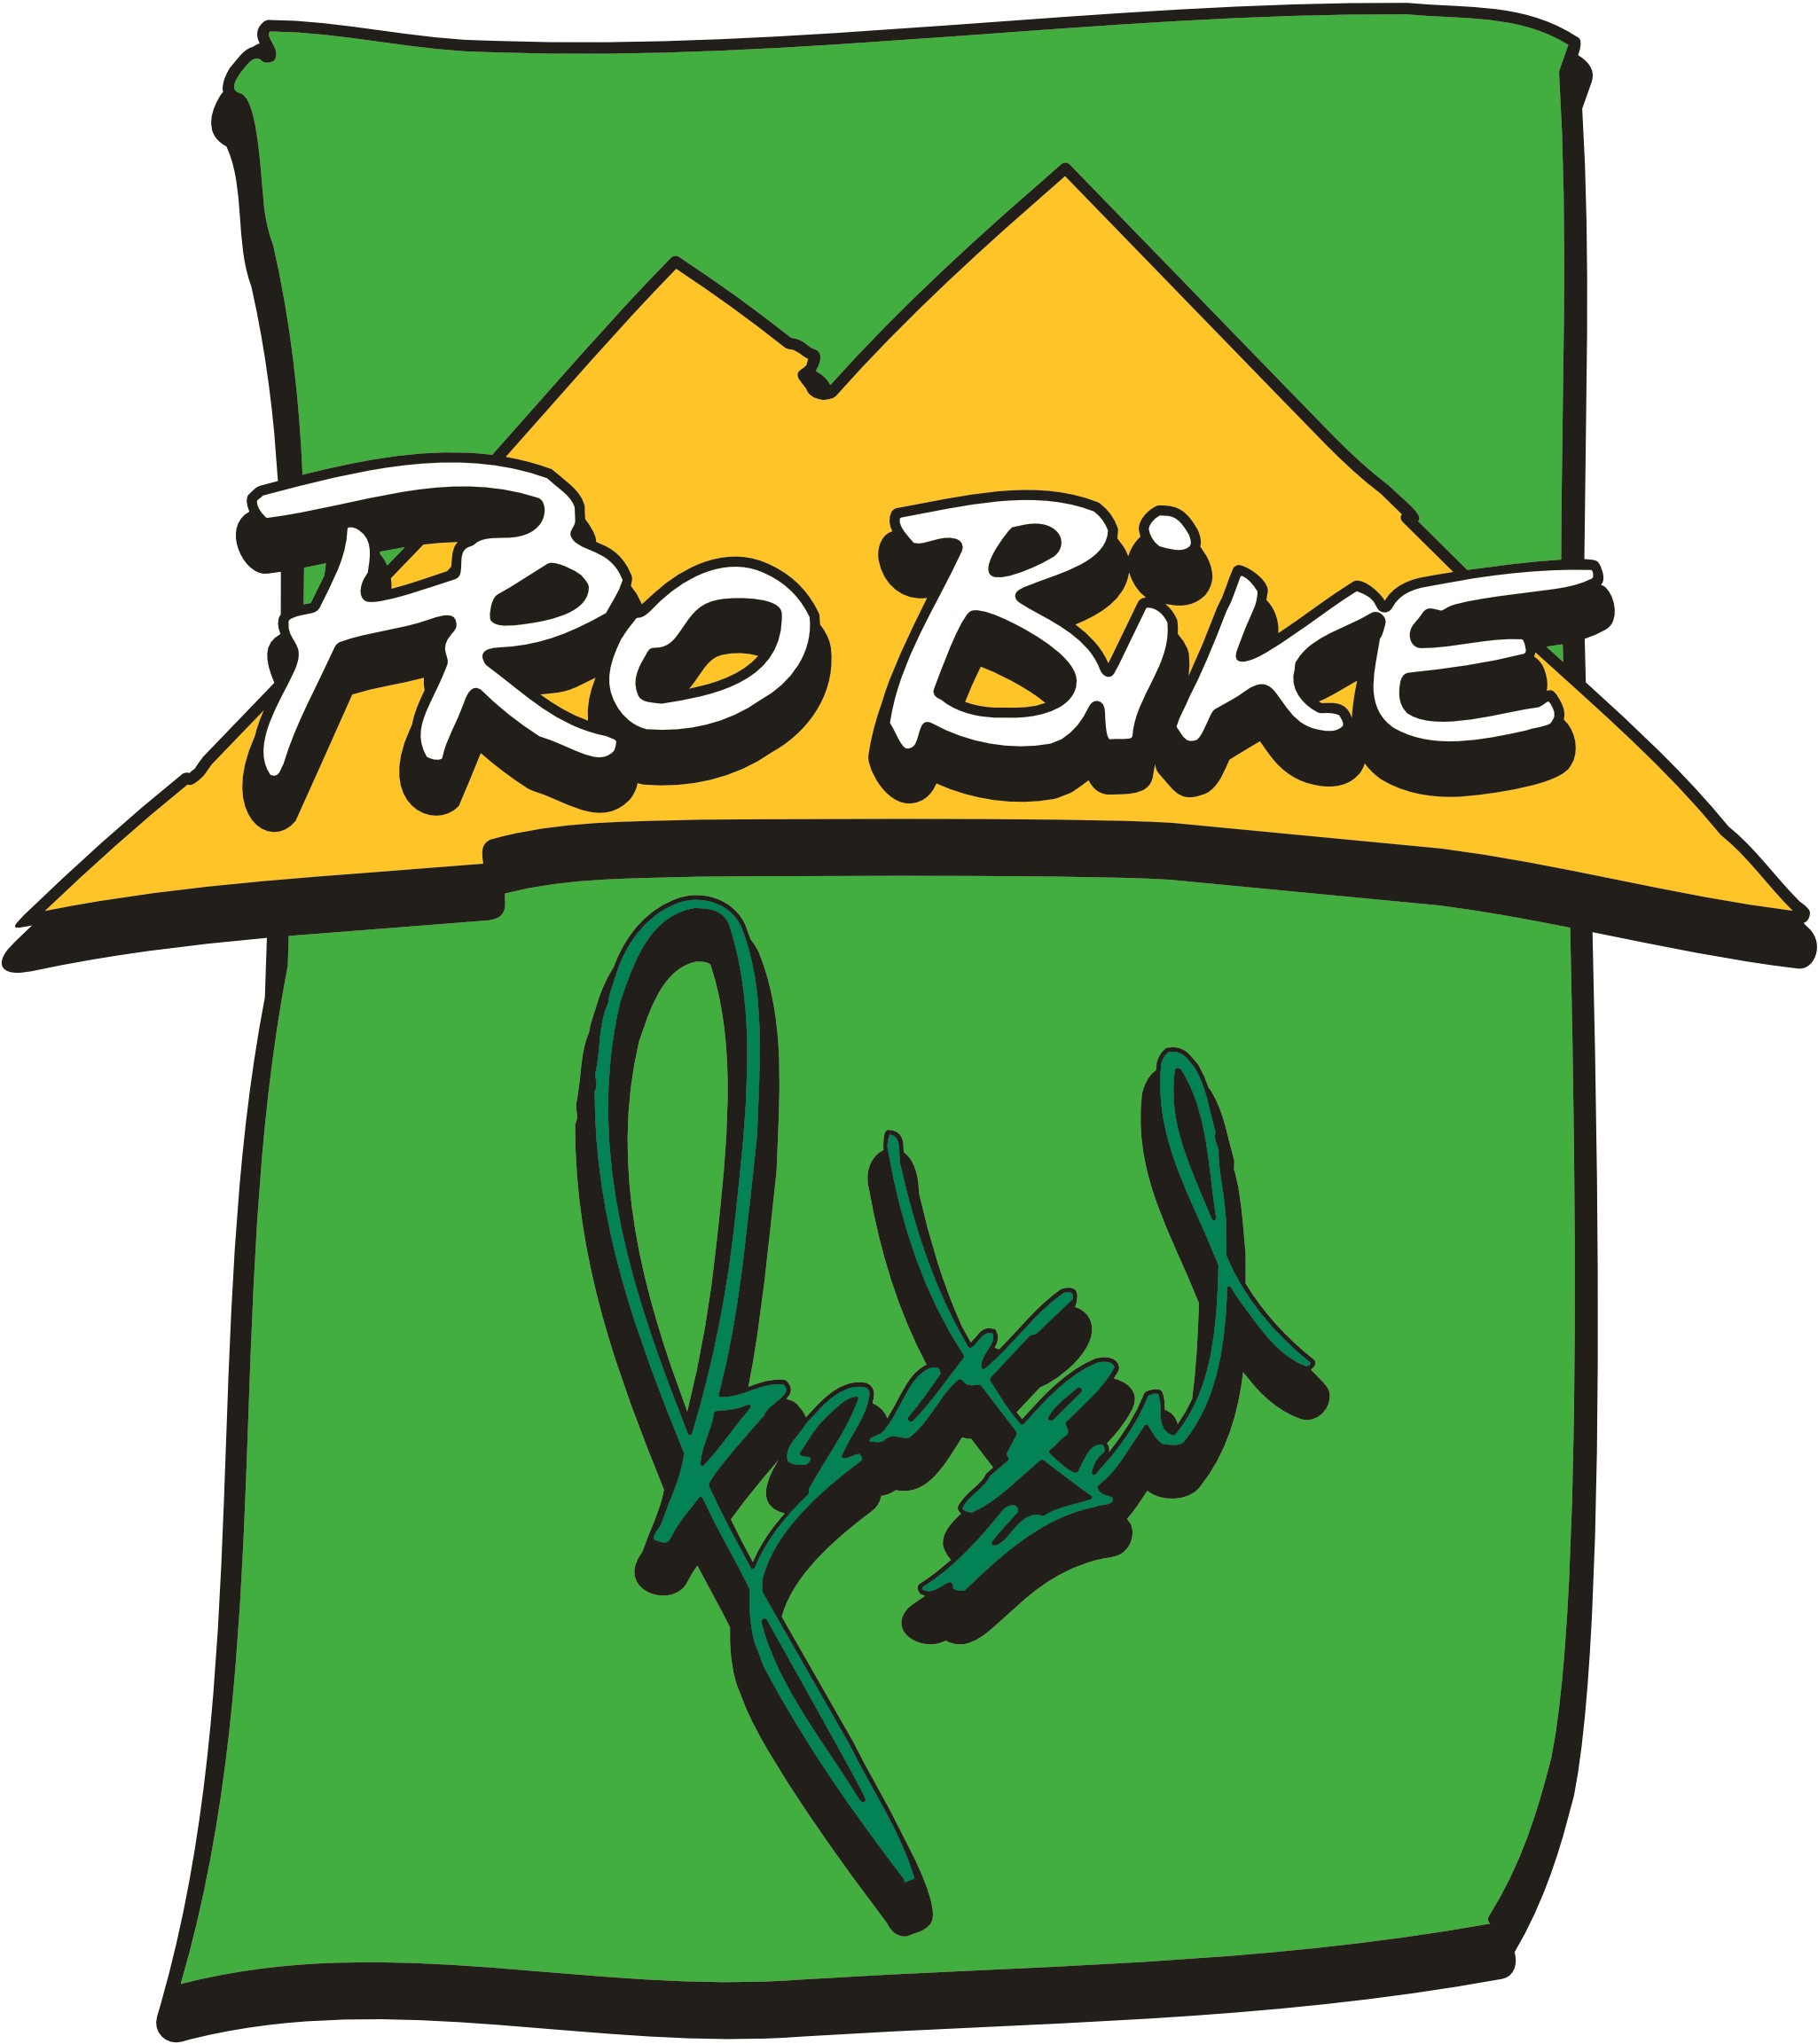 Pro Bike Logo